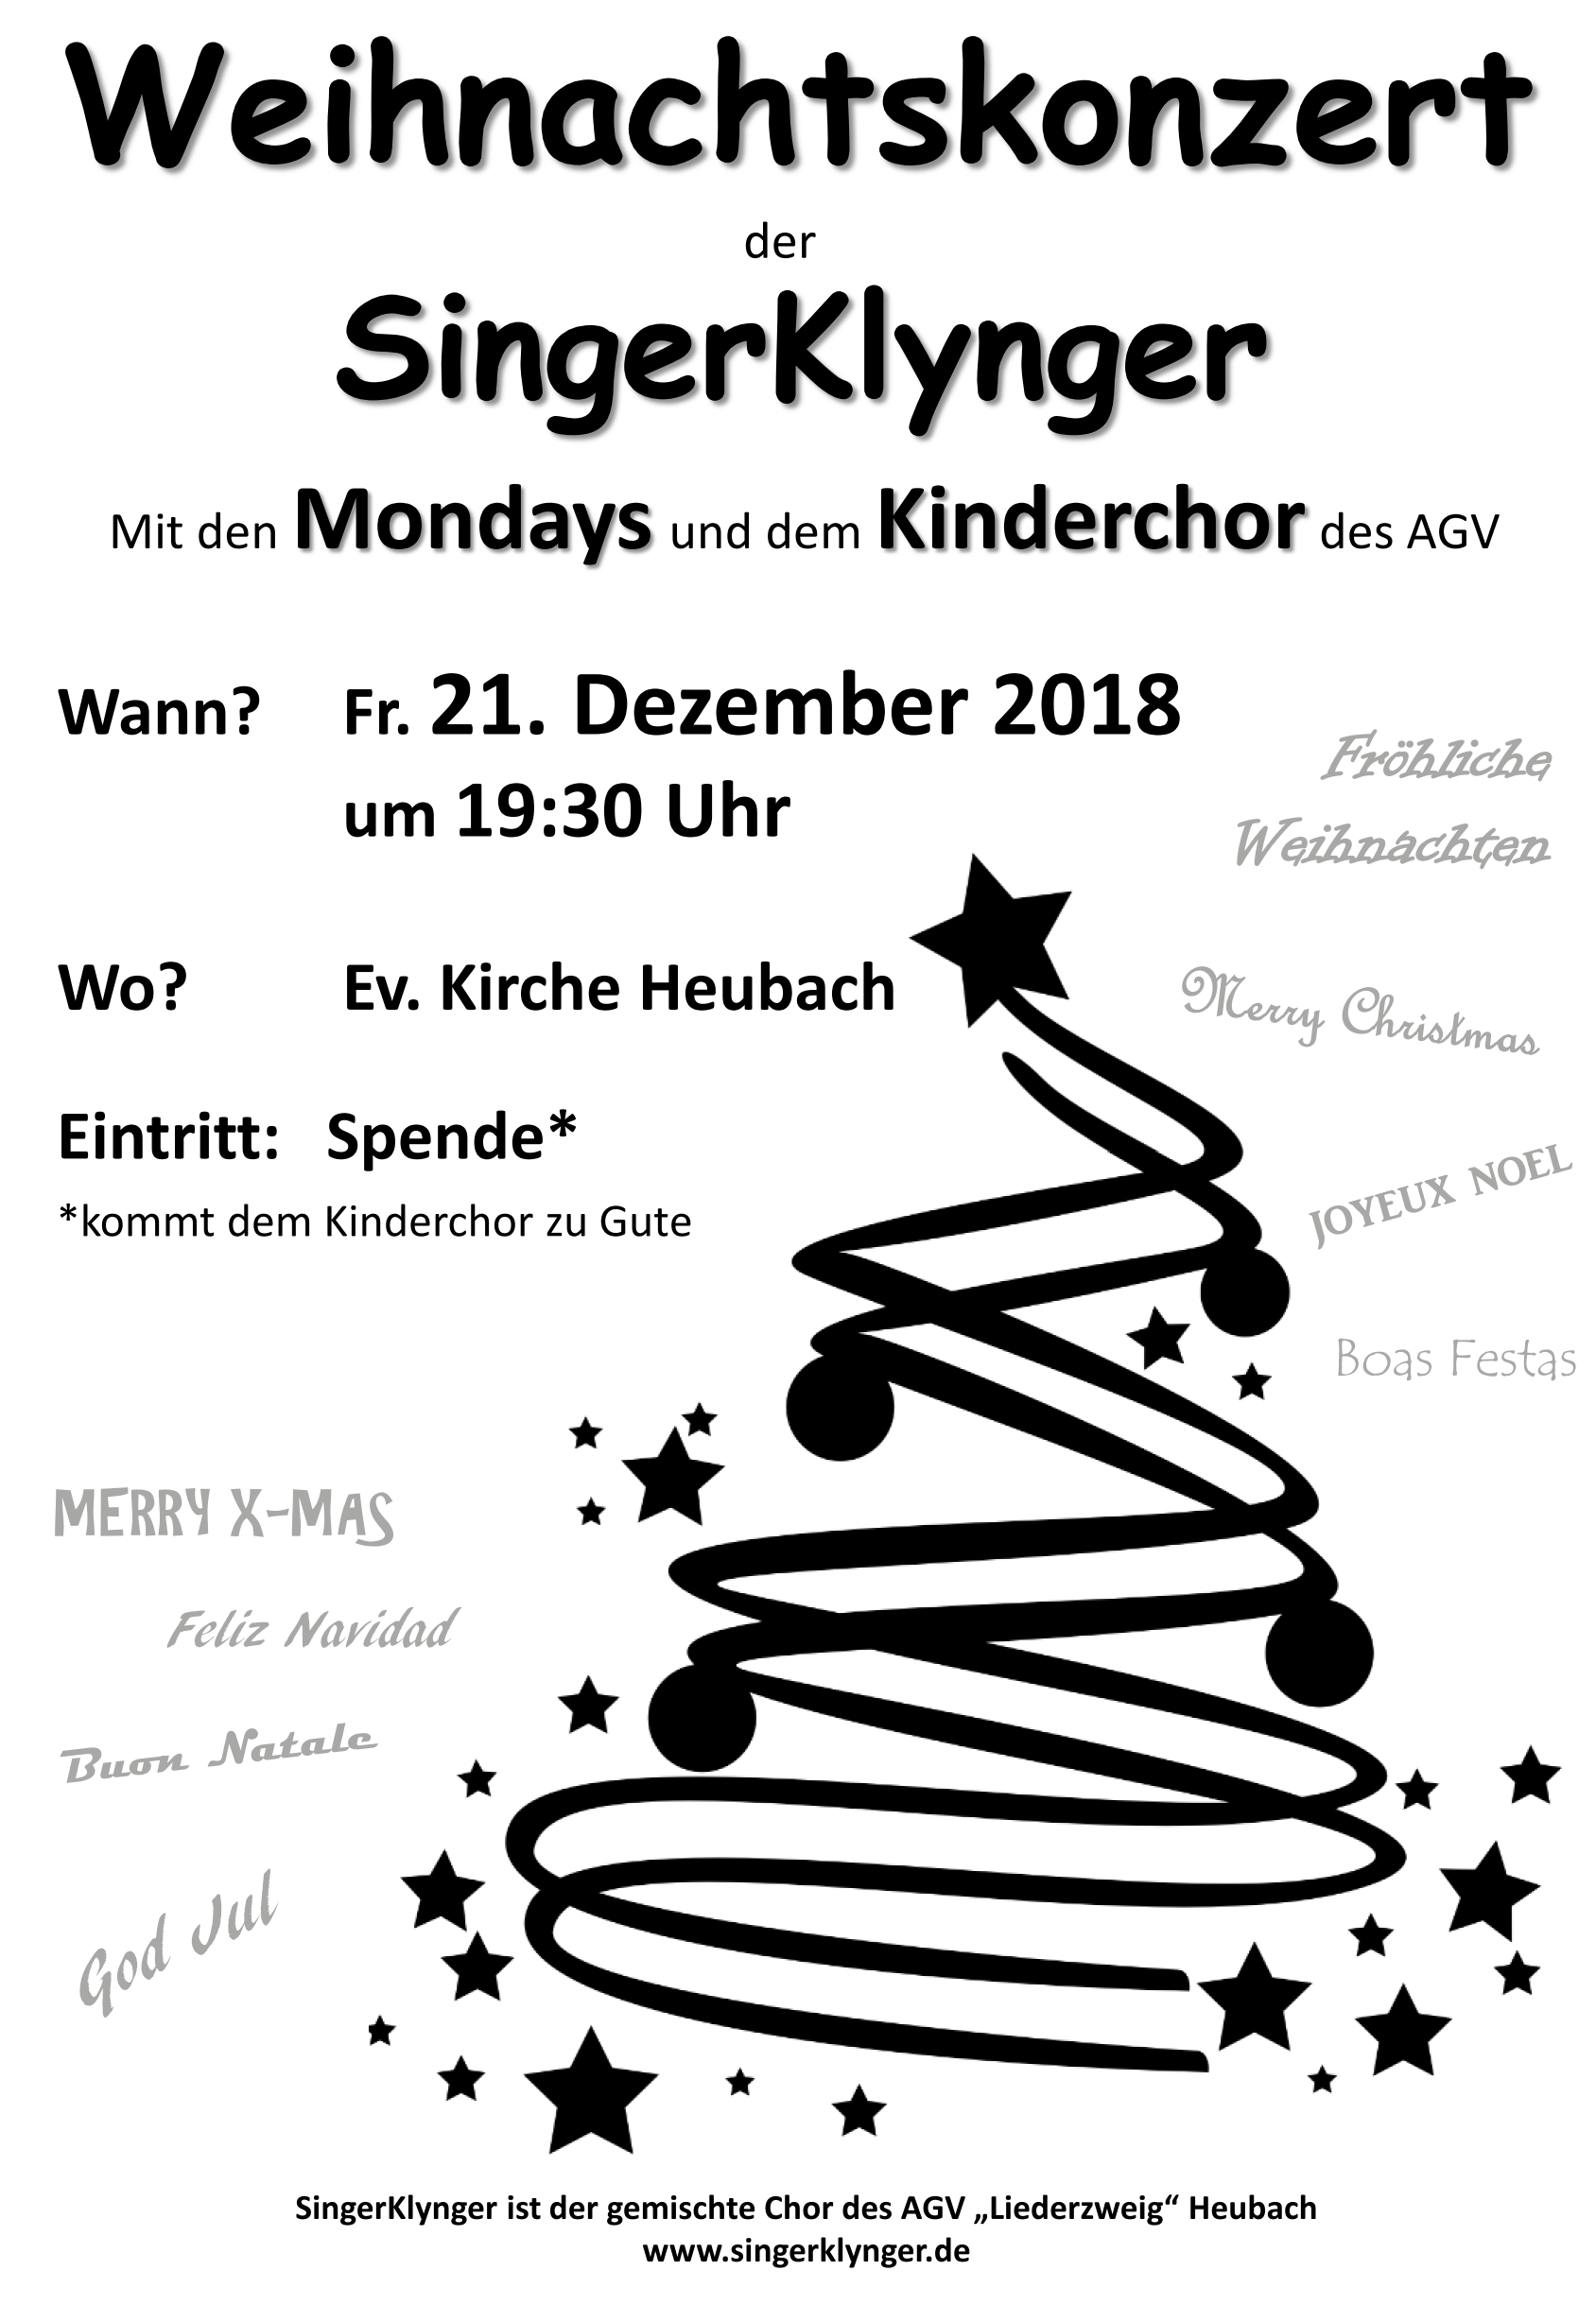 Weihnachtskonzert der SingerKlynger mit den Mondays und dem Kinderchor.  Am Freitag, den 21. Dezember 2018 um 19:30 Uhr in der Evangelischen Kirche in Heubach